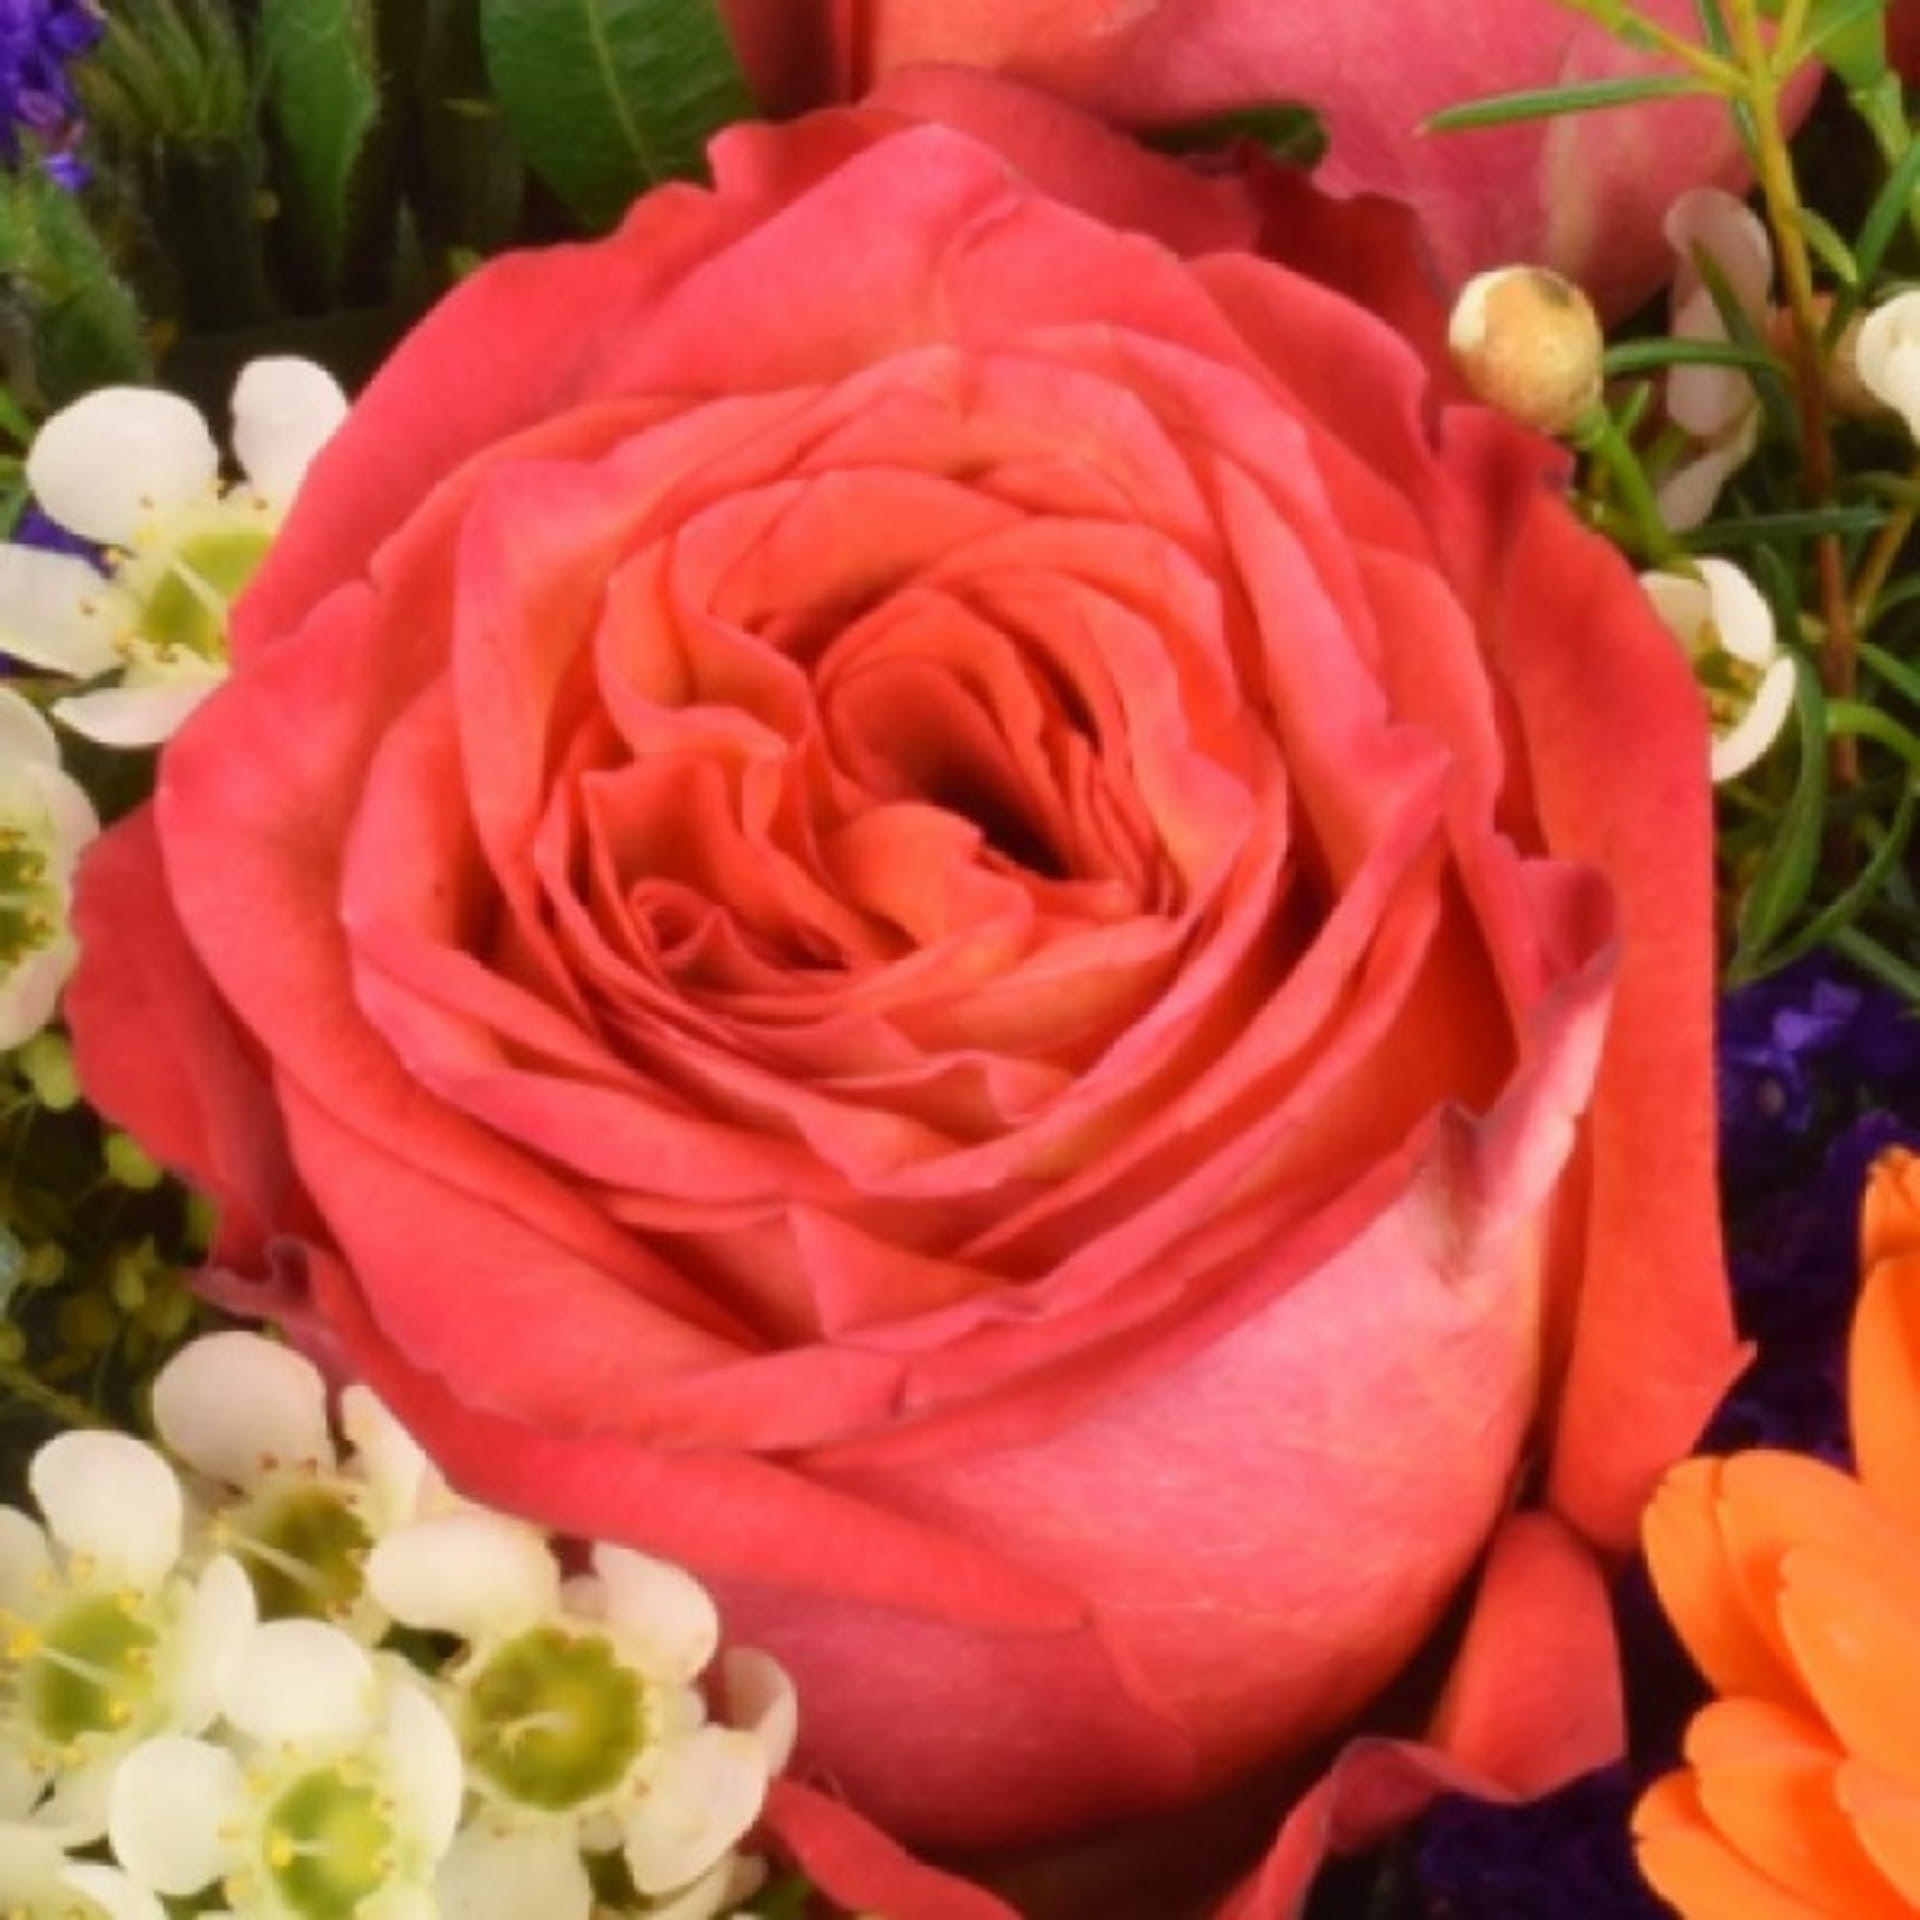 Detailfoto rote Rose im Blumenstrauß